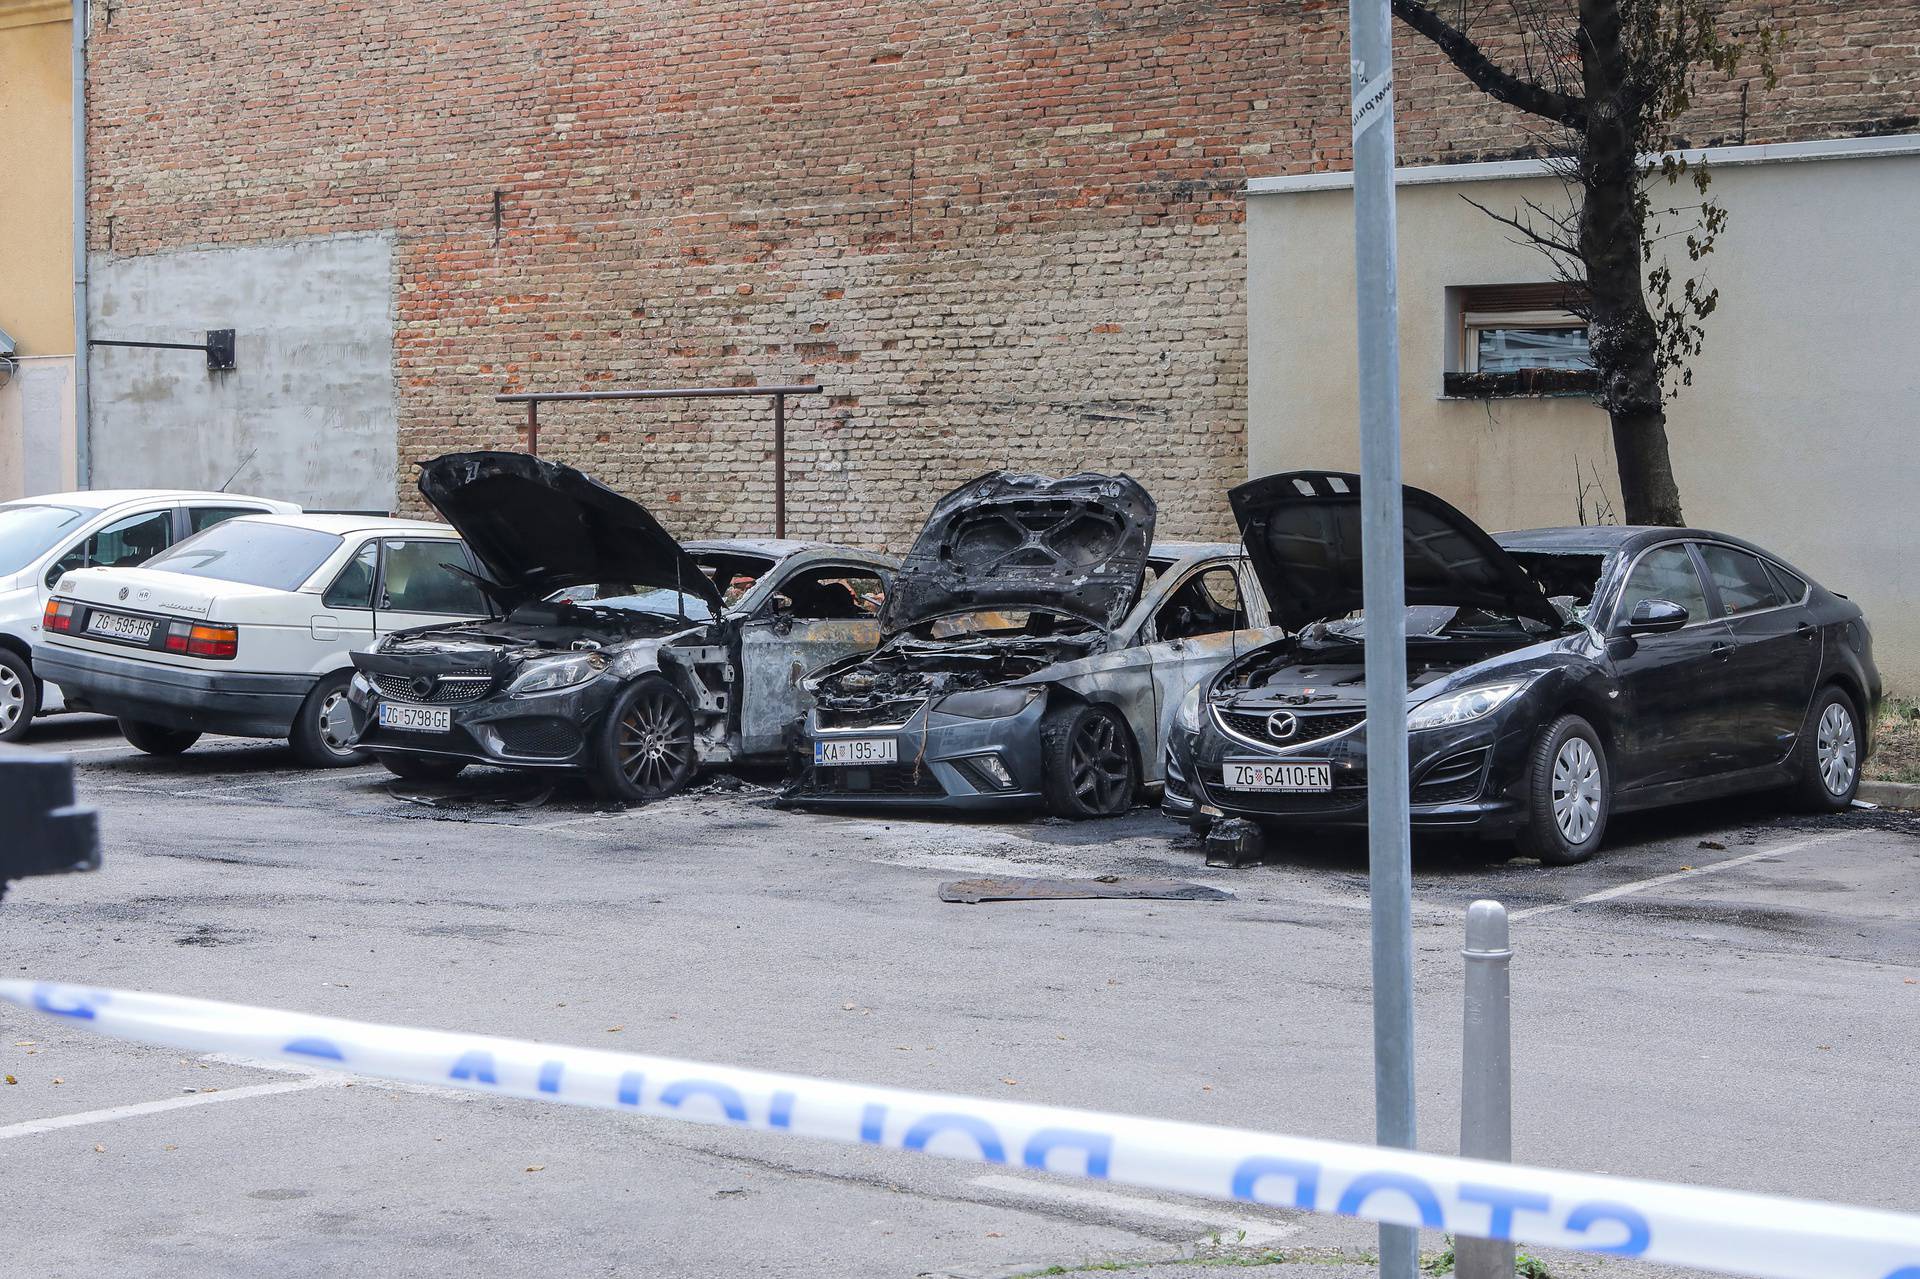 Zagreb: Noćas u Maksimirskoj izgorila četiri automobila